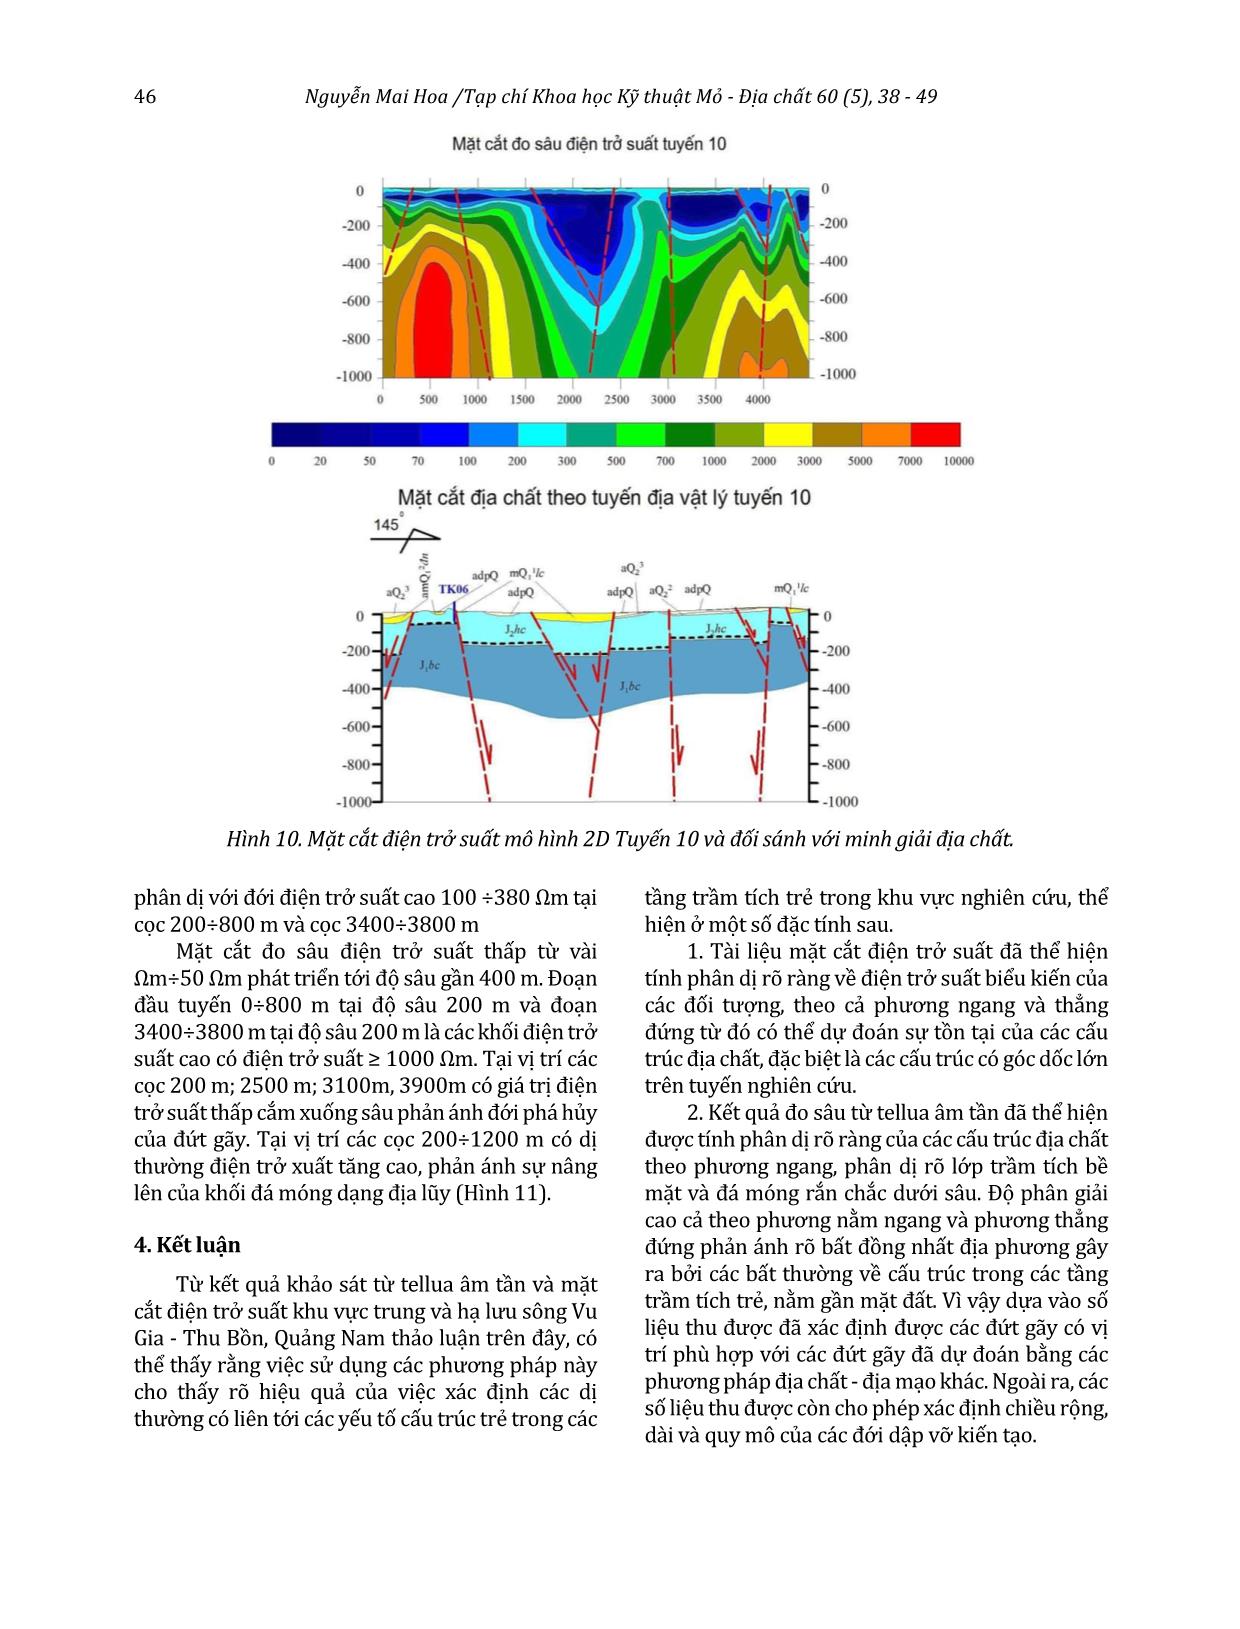 Hiệu quả phương pháp đo sâu từ tellua âm tần kết hợp đo mặt cắt điện trong xác định cấu trúc địa chất trẻ khu vực Quảng Nam, miền Trung Việt Nam trang 9